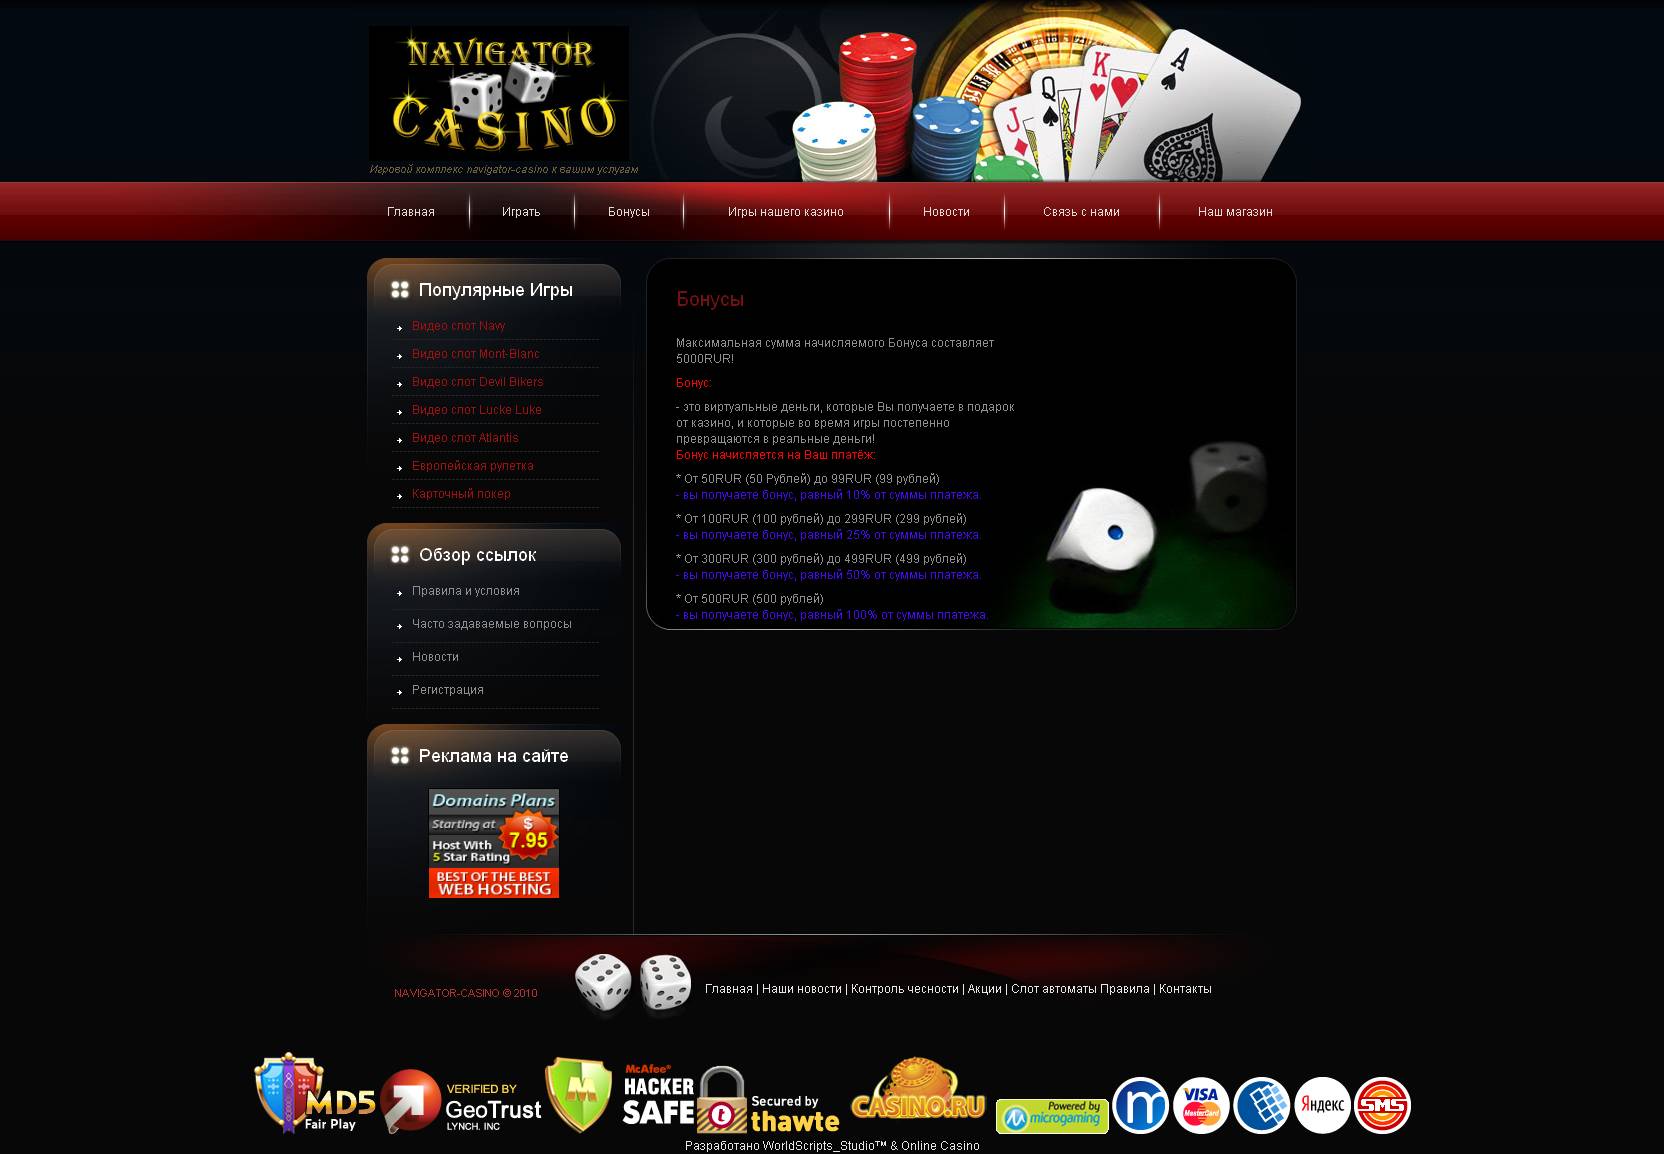 Flash casino victoria скачать скачать чат рулетка на андроид бесплатно без регистрации онлайн с телефона на русском языке русском